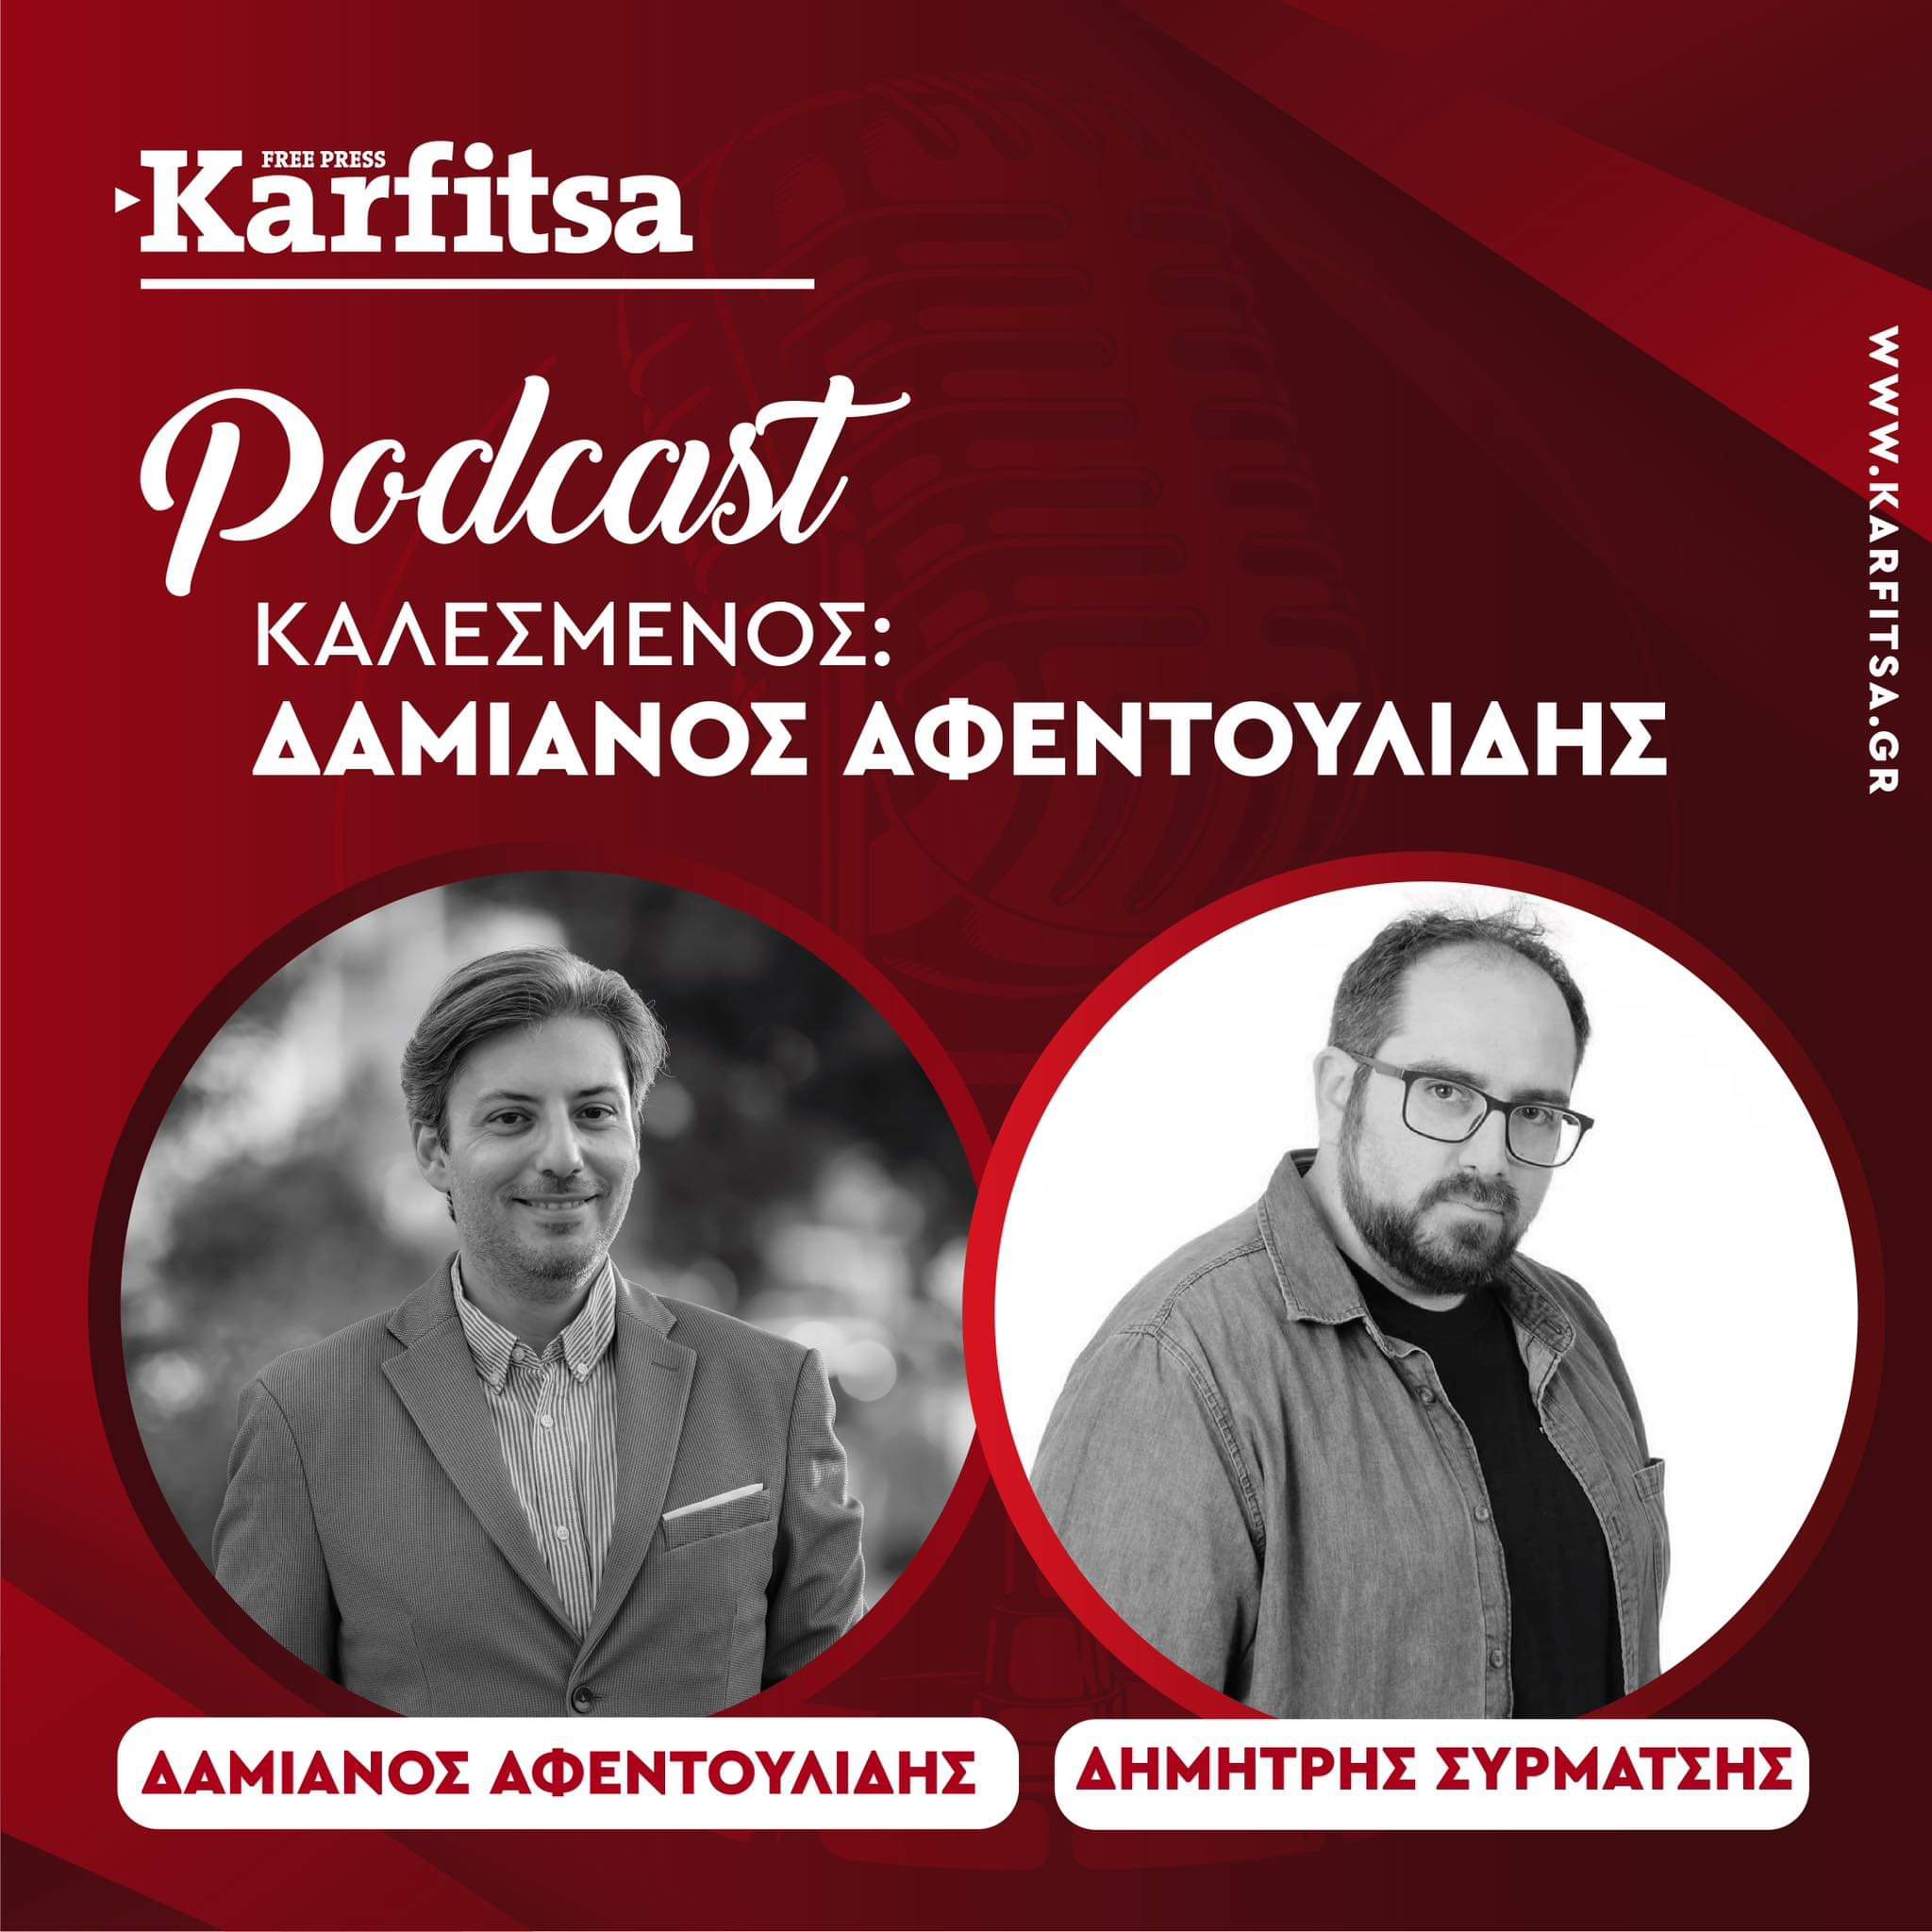 Δαμιανός – Χρήστος Αφεντουλίδης: Ένα πολύγλωσσο «εργαλείο» στο ψηφοδέλτιο του Απόστολου Τζιτζικώστα (Podcast)